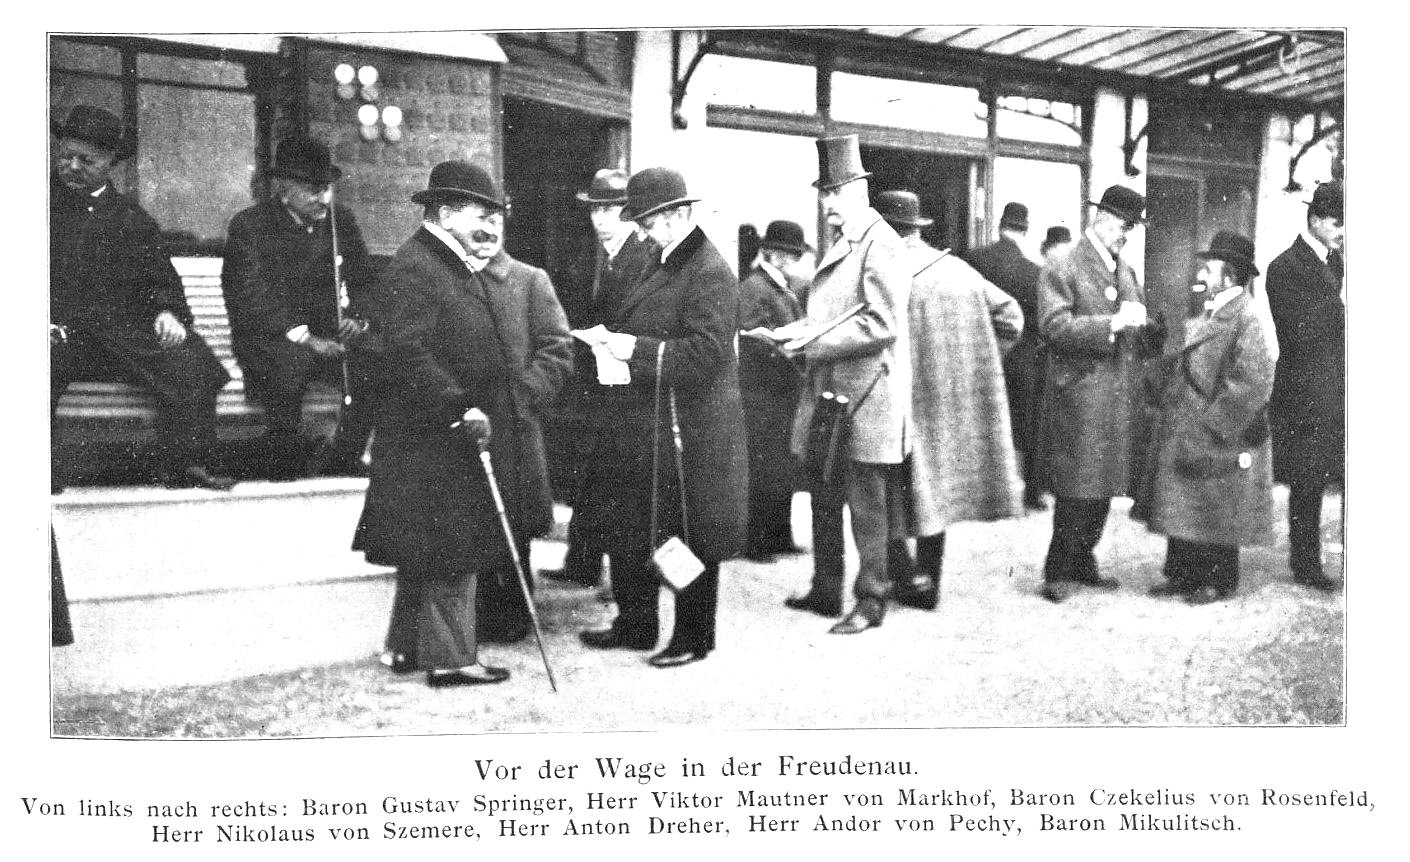 Freudenau, 1916: Gustav von Springer, Viktor Mautner von Markhof, Baron Czekelius von Rosenfeld, Nikolaus von Szemere, Anton Dreher, Andor von Pechy, Baron Mikulitsch.